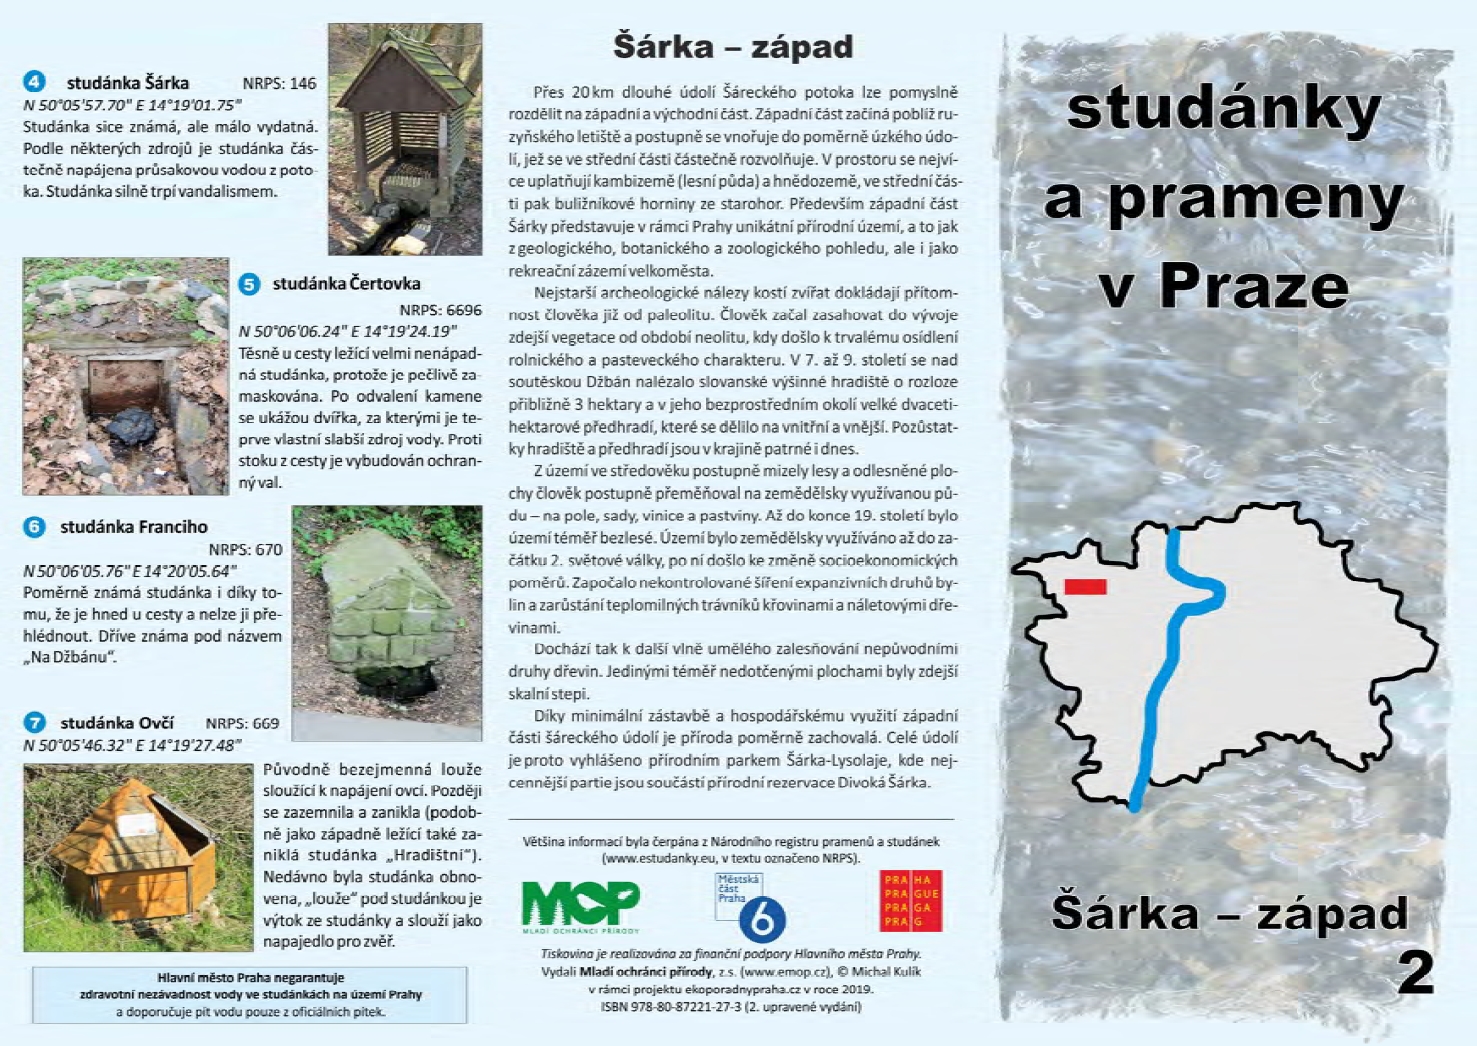 2958543_informační materiál Studánky a prameny v Praze, č.2 - Šárka-západ, ilustrační obr.